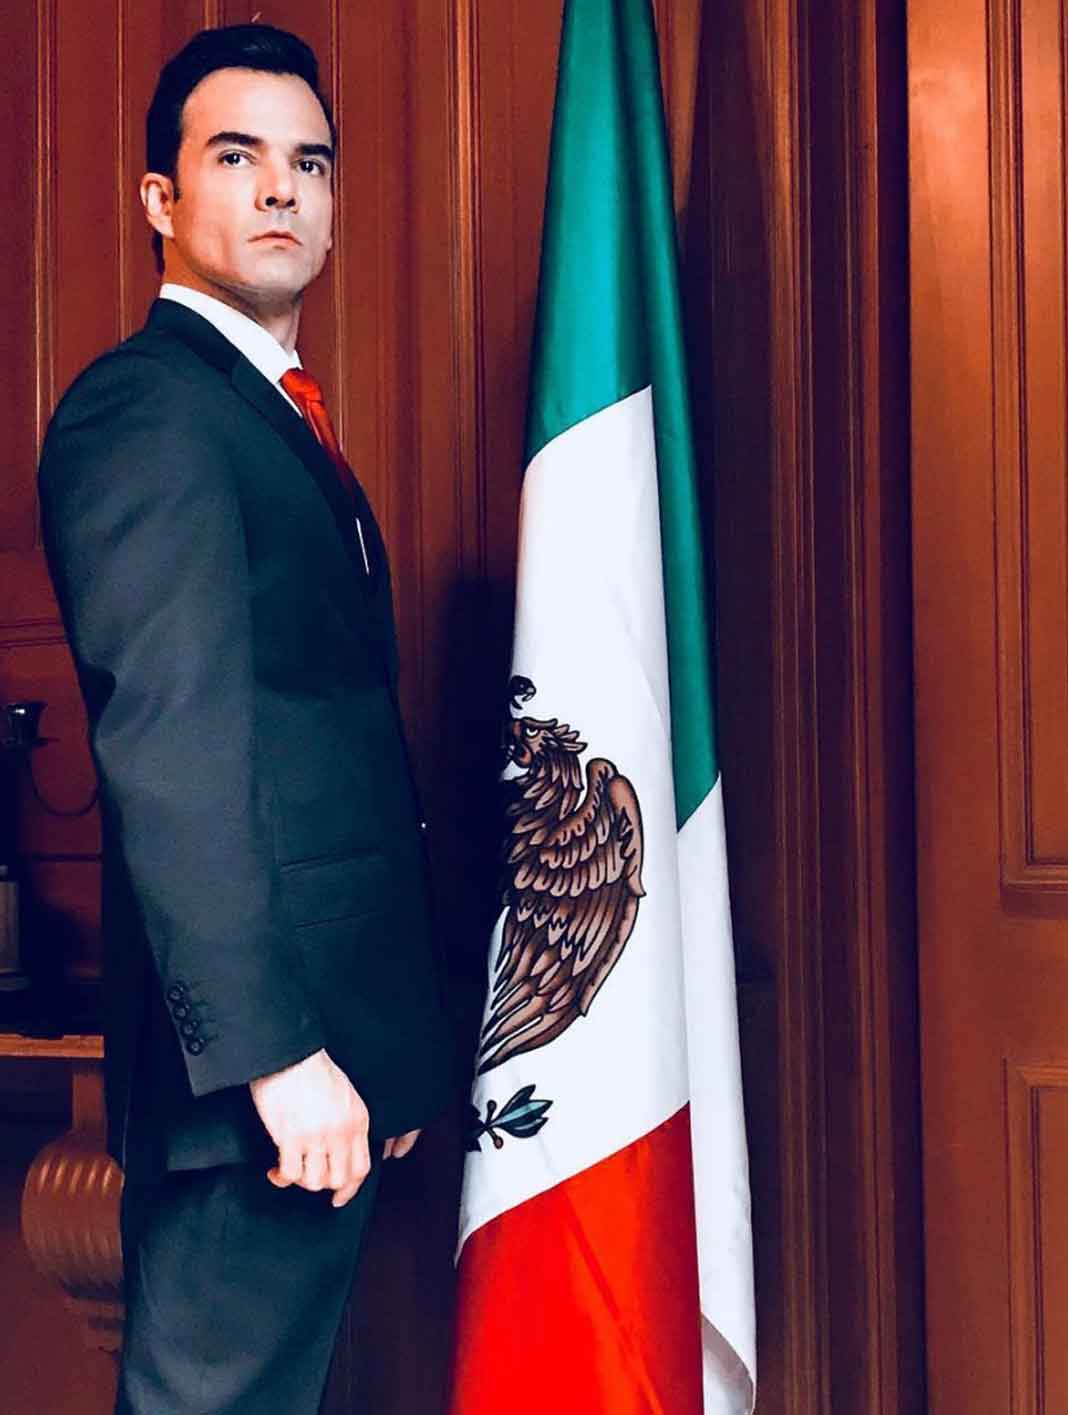 El actor Jesús Moré es Omar Terán, Presidente de México... o sea, ya saben a quién interpreta